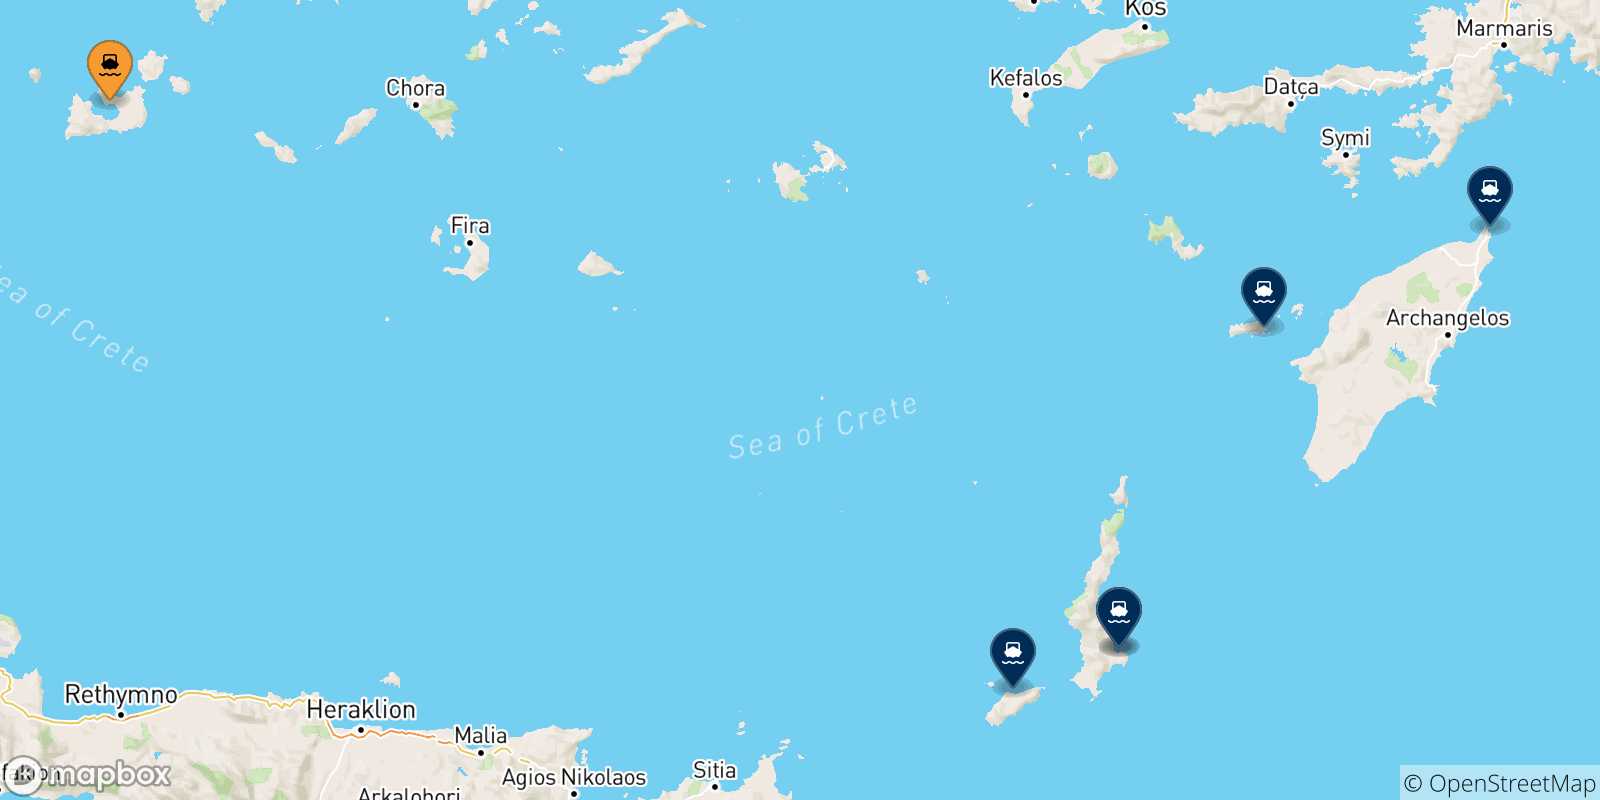 Mappa delle possibili rotte tra Milos e le Isole Dodecaneso